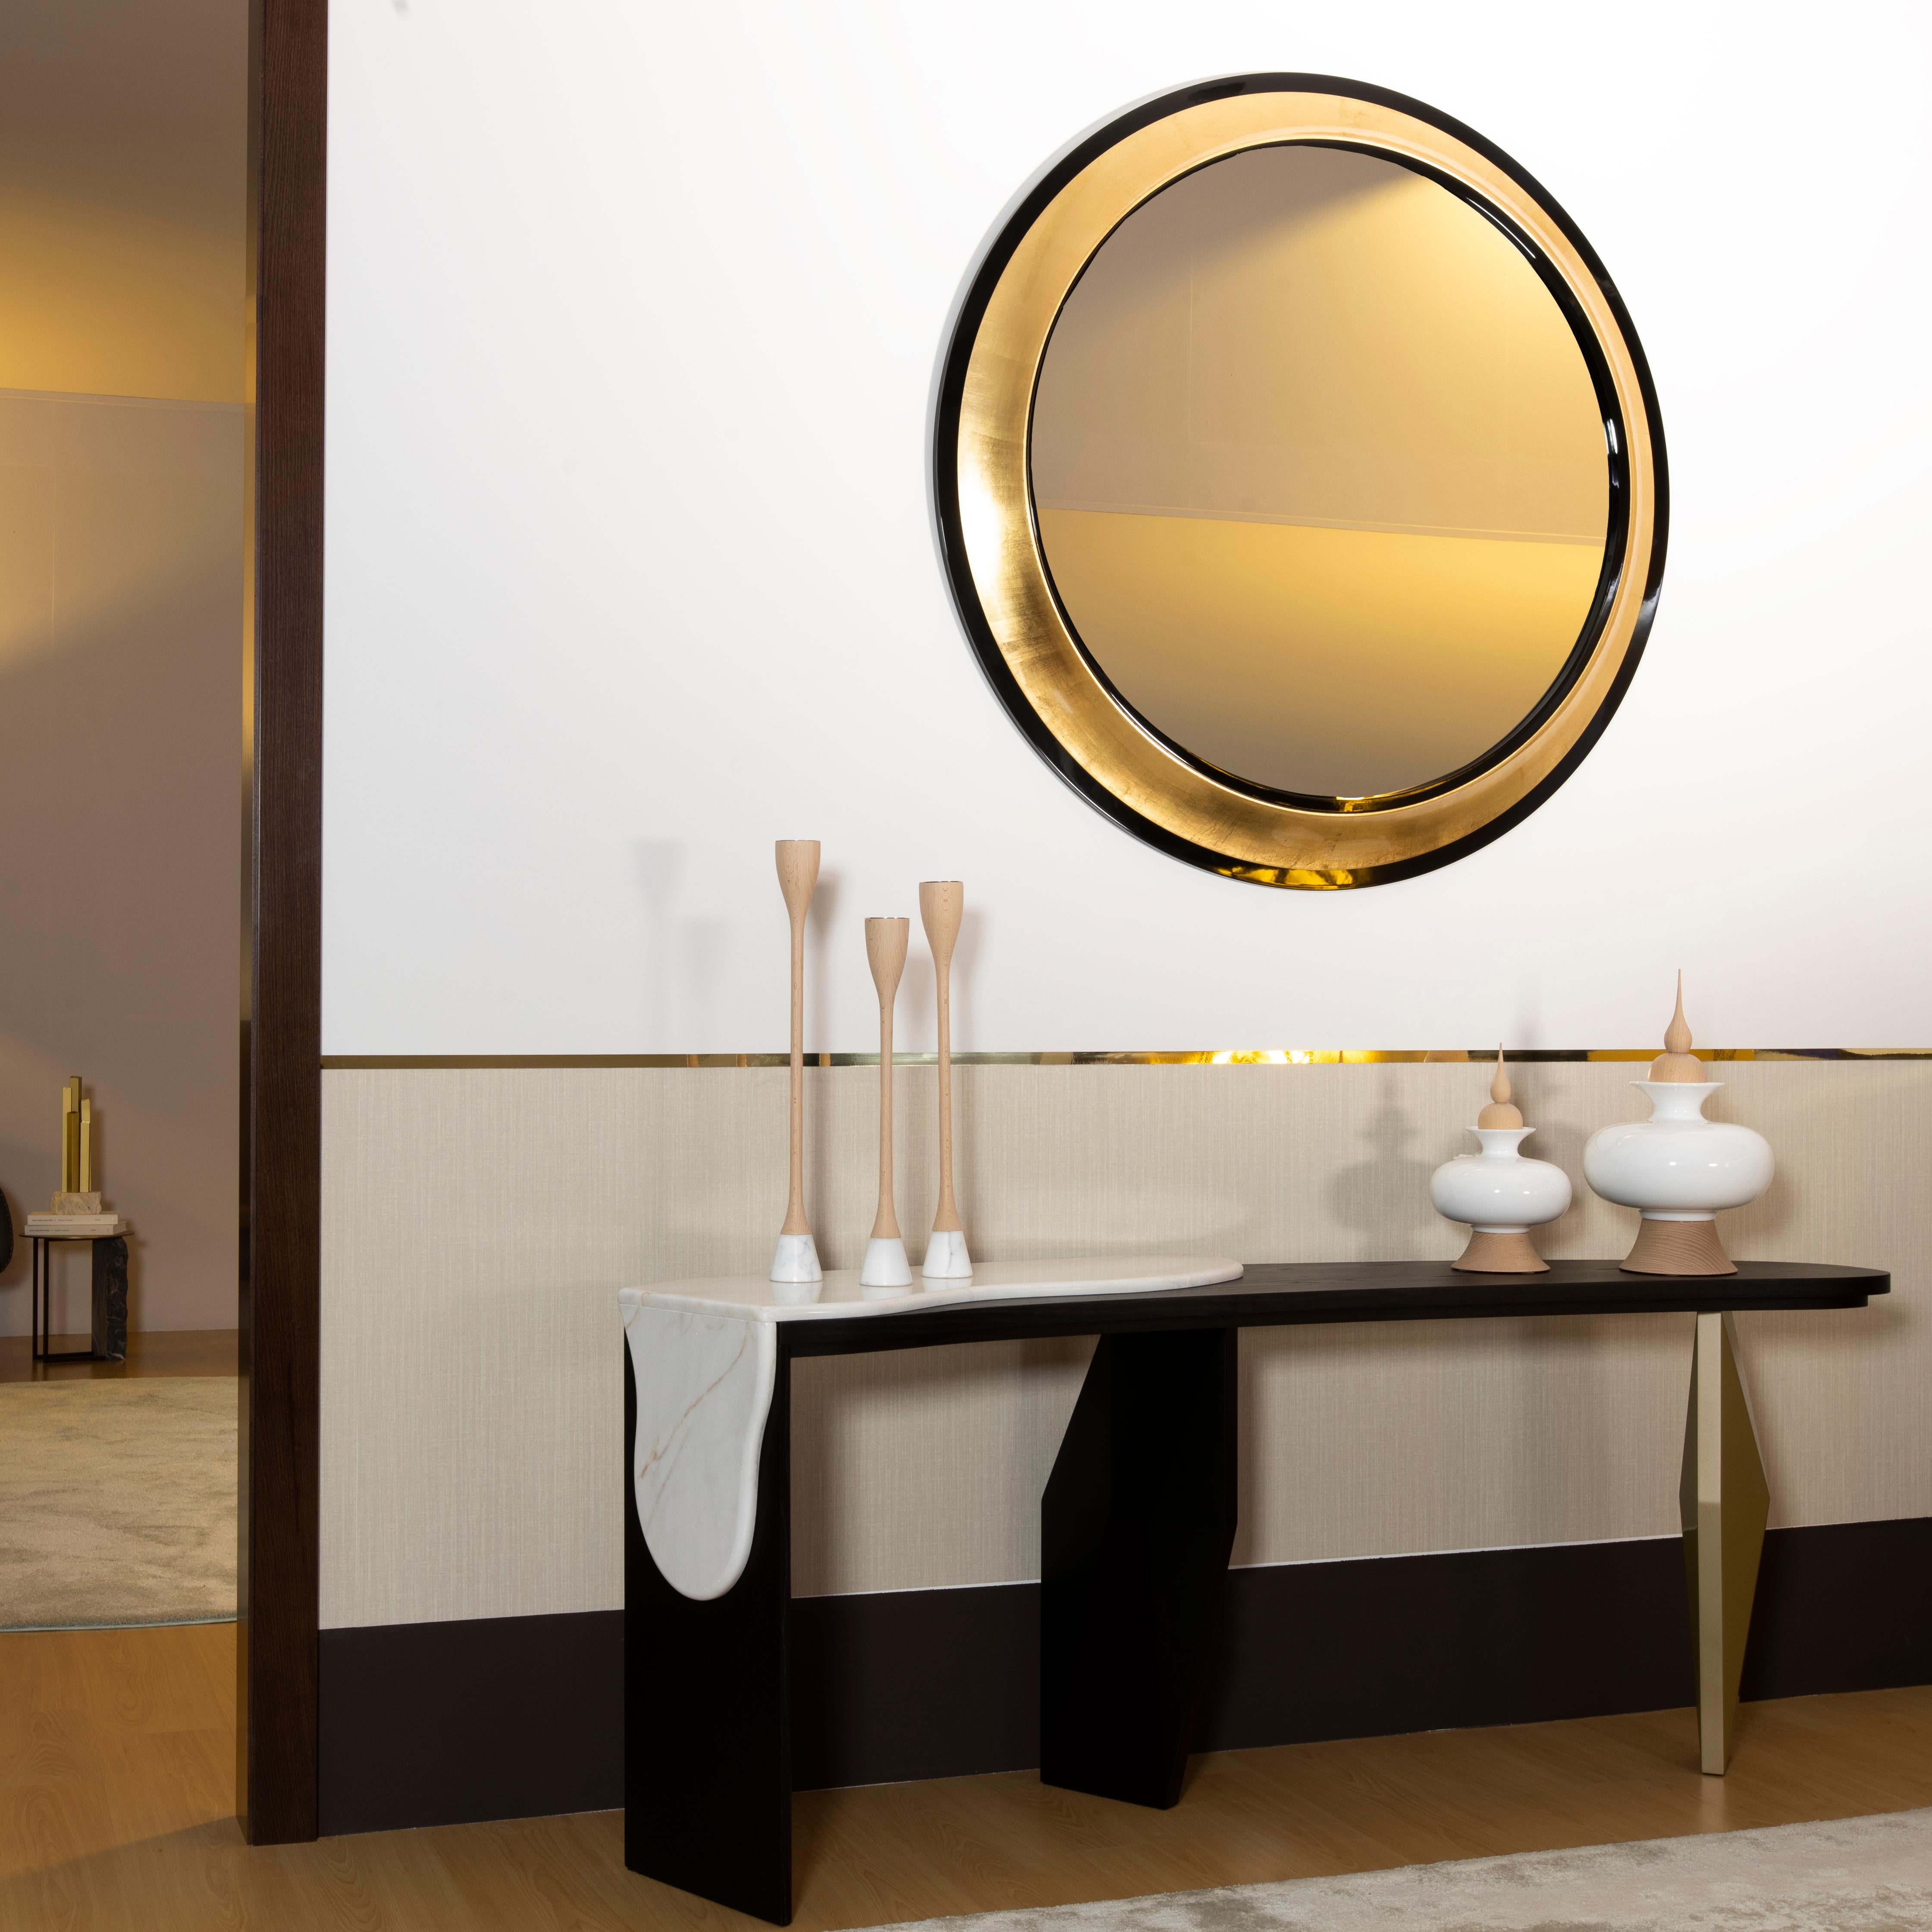 Grifo Wandspiegel, Modern Collection, handgefertigt in Portugal - Europa von GF Modern.

Grifo ist ein runder Spiegel im klassischen Stil, der seine anmutige Persönlichkeit widerspiegelt. Der lebhafte Kontrast zwischen den beiden schwarzen Ringen